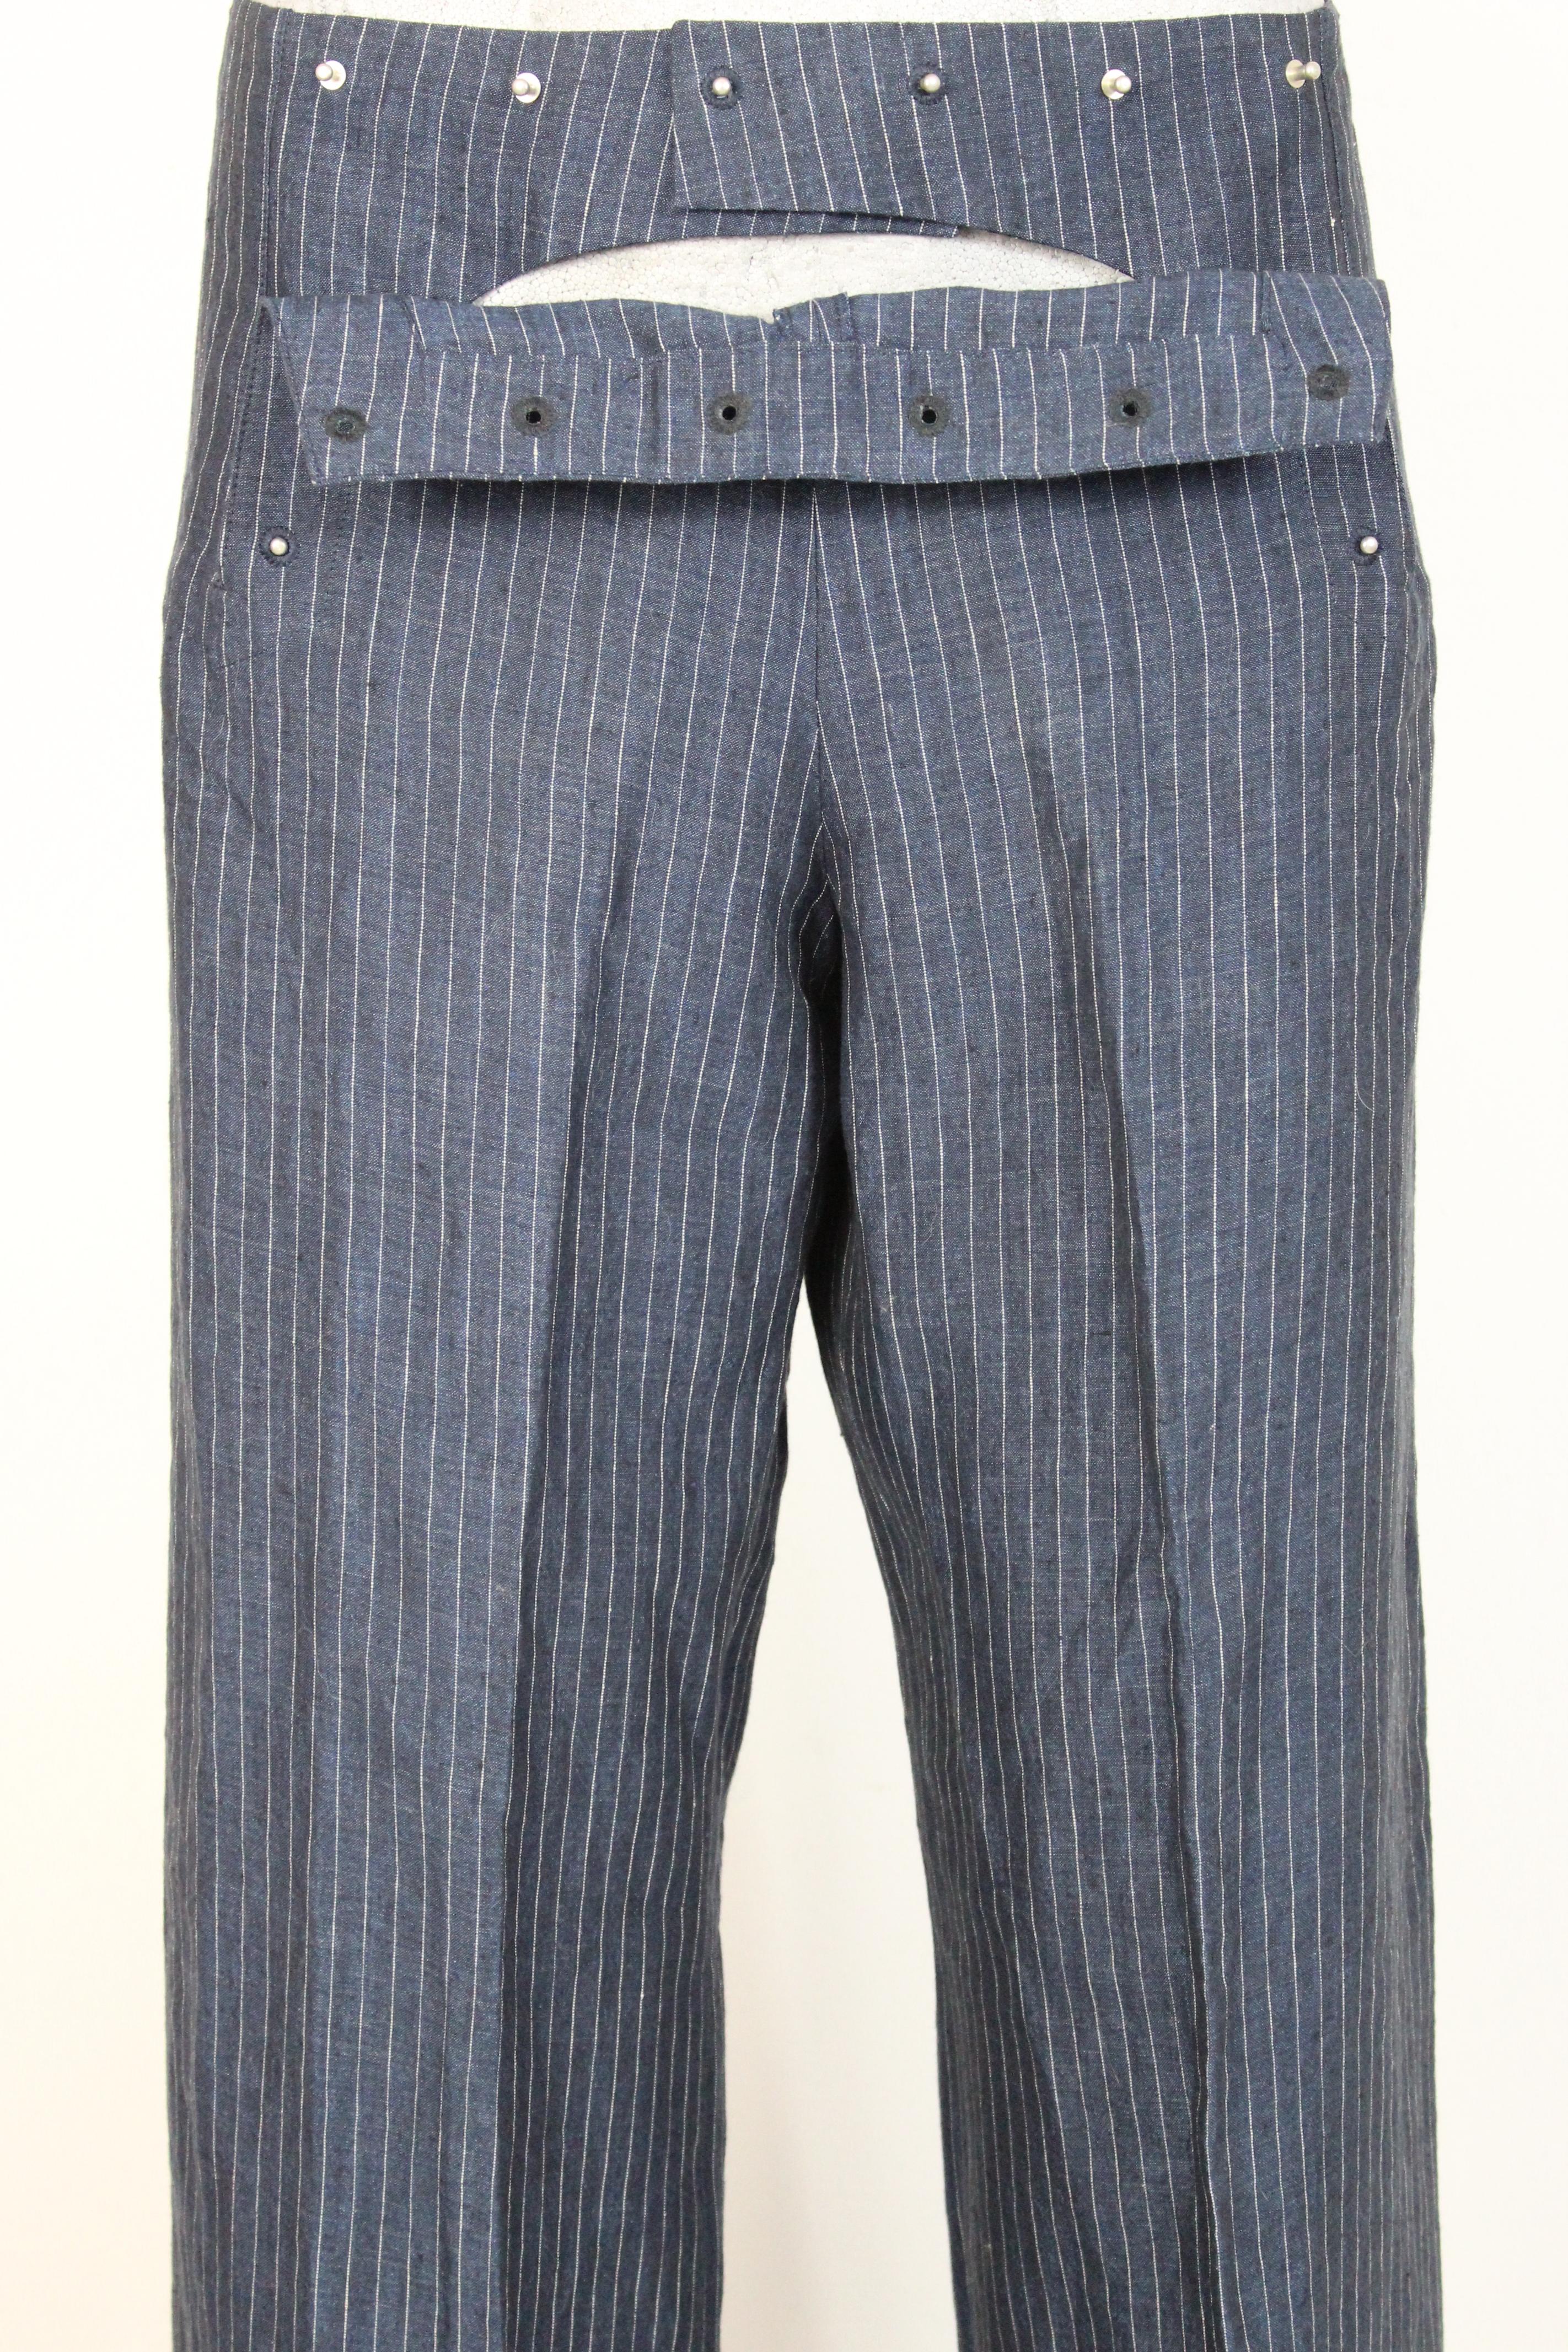 Jean Paul Gaultier Blue Gray Linen Striped Trousers 2